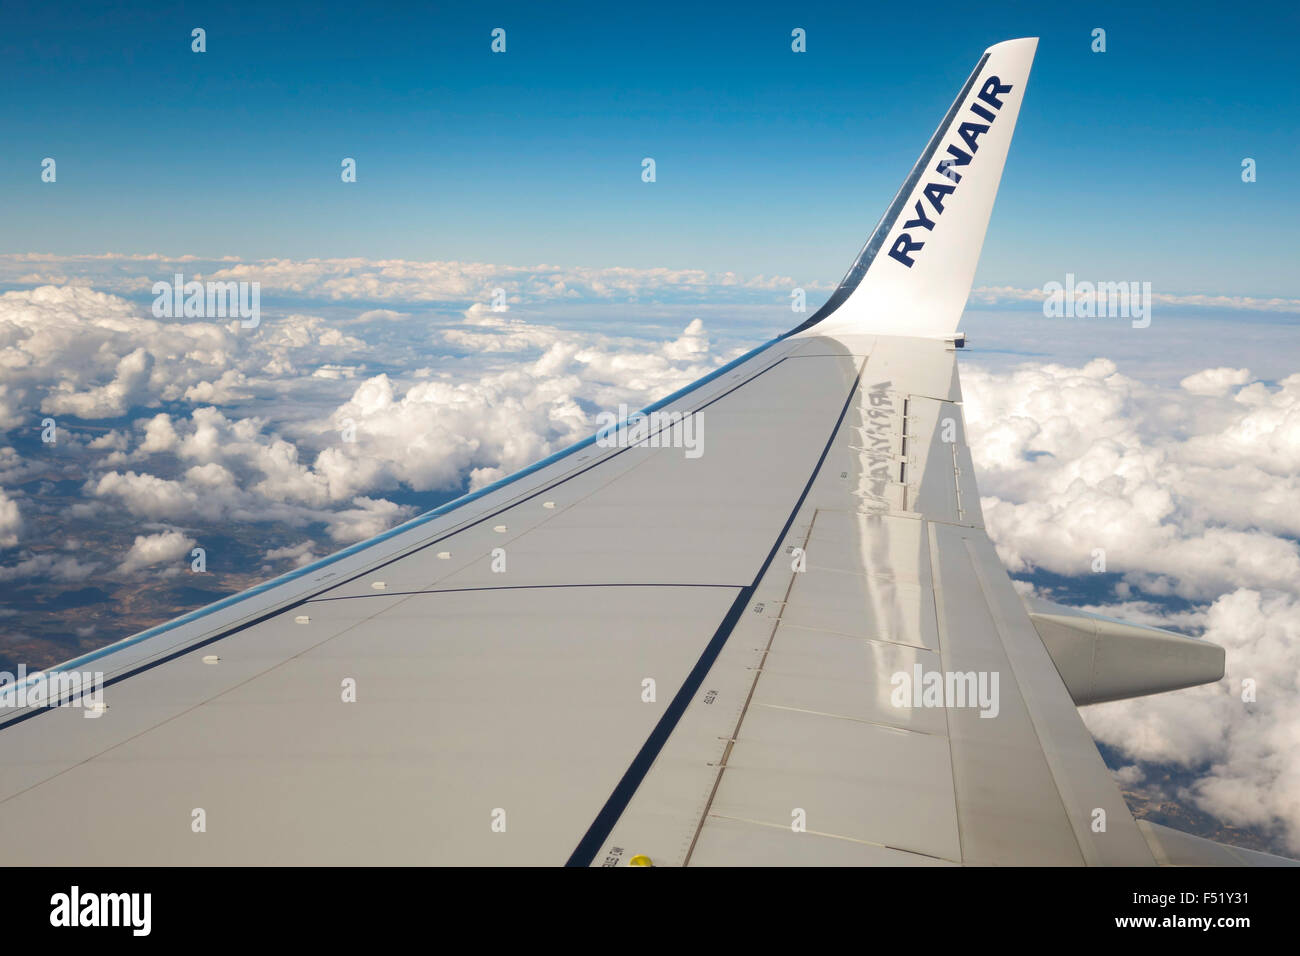 Ryanair irische Low-Cost-Airline Flugzeuge, Flügelspitze mit Logo und Wolken hinter. Stockfoto